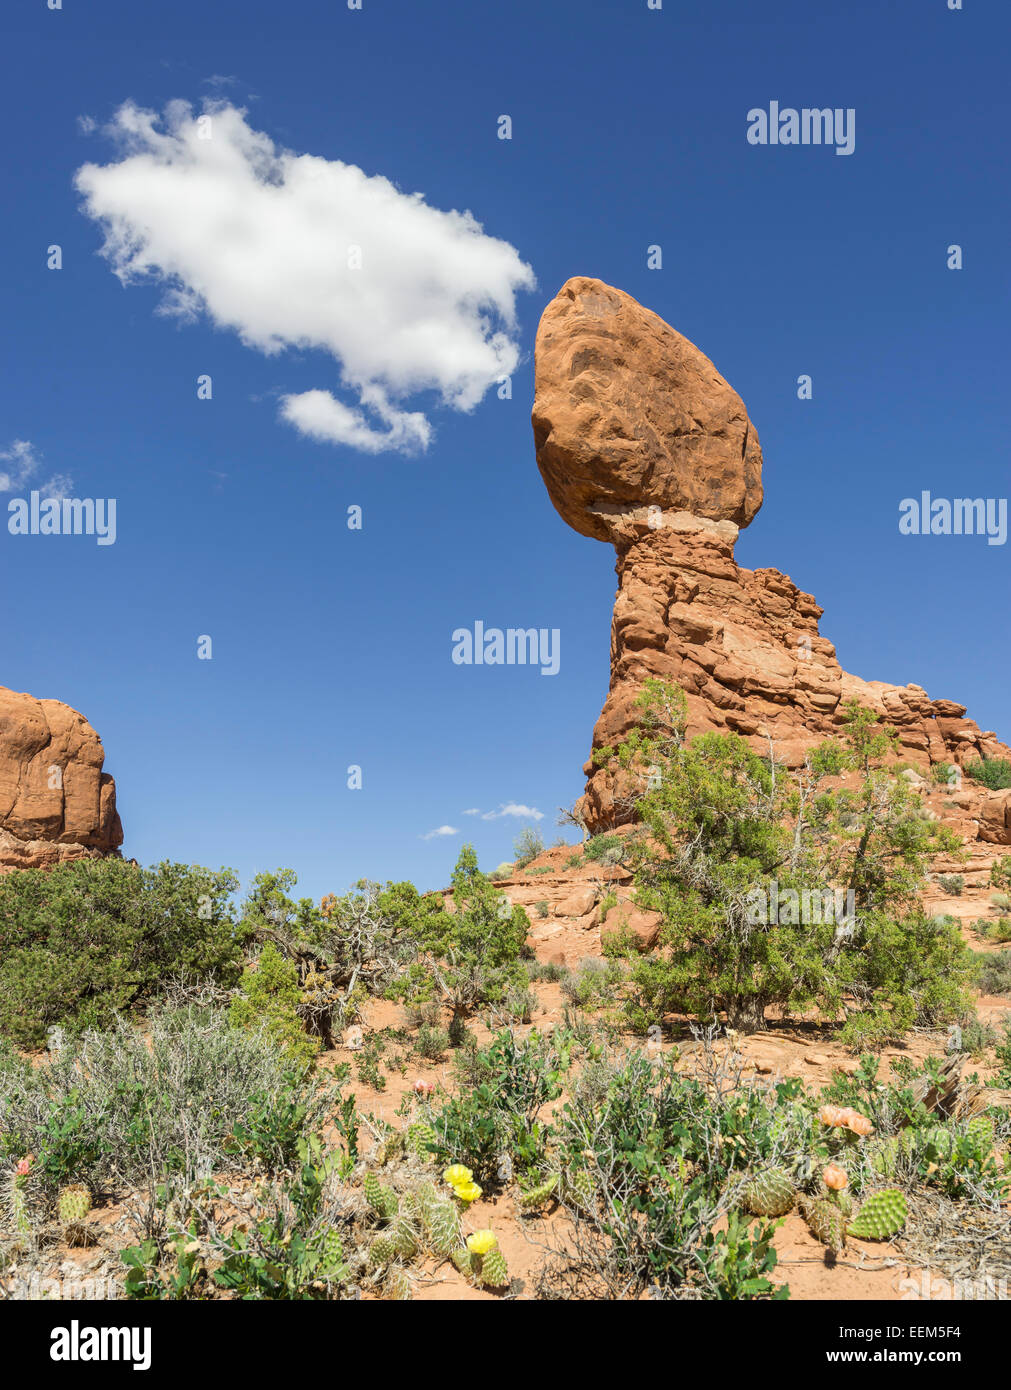 Balanced Rock, Arches National Park, Moab, Utah, United States Stock Photo